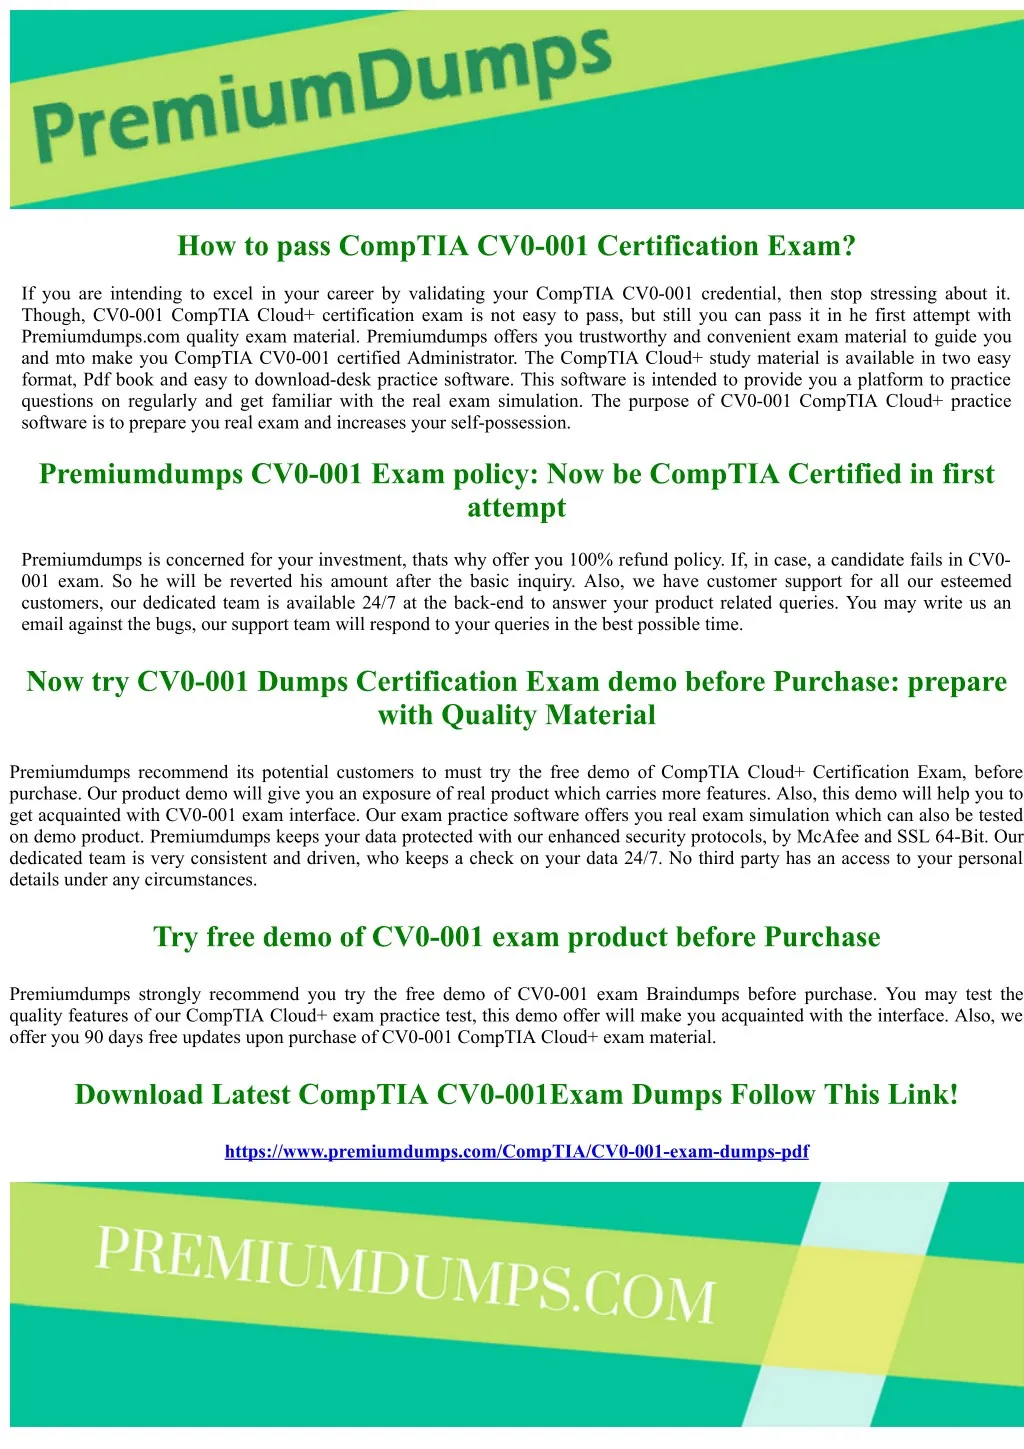 how to pass comptia cv0 001 certification exam